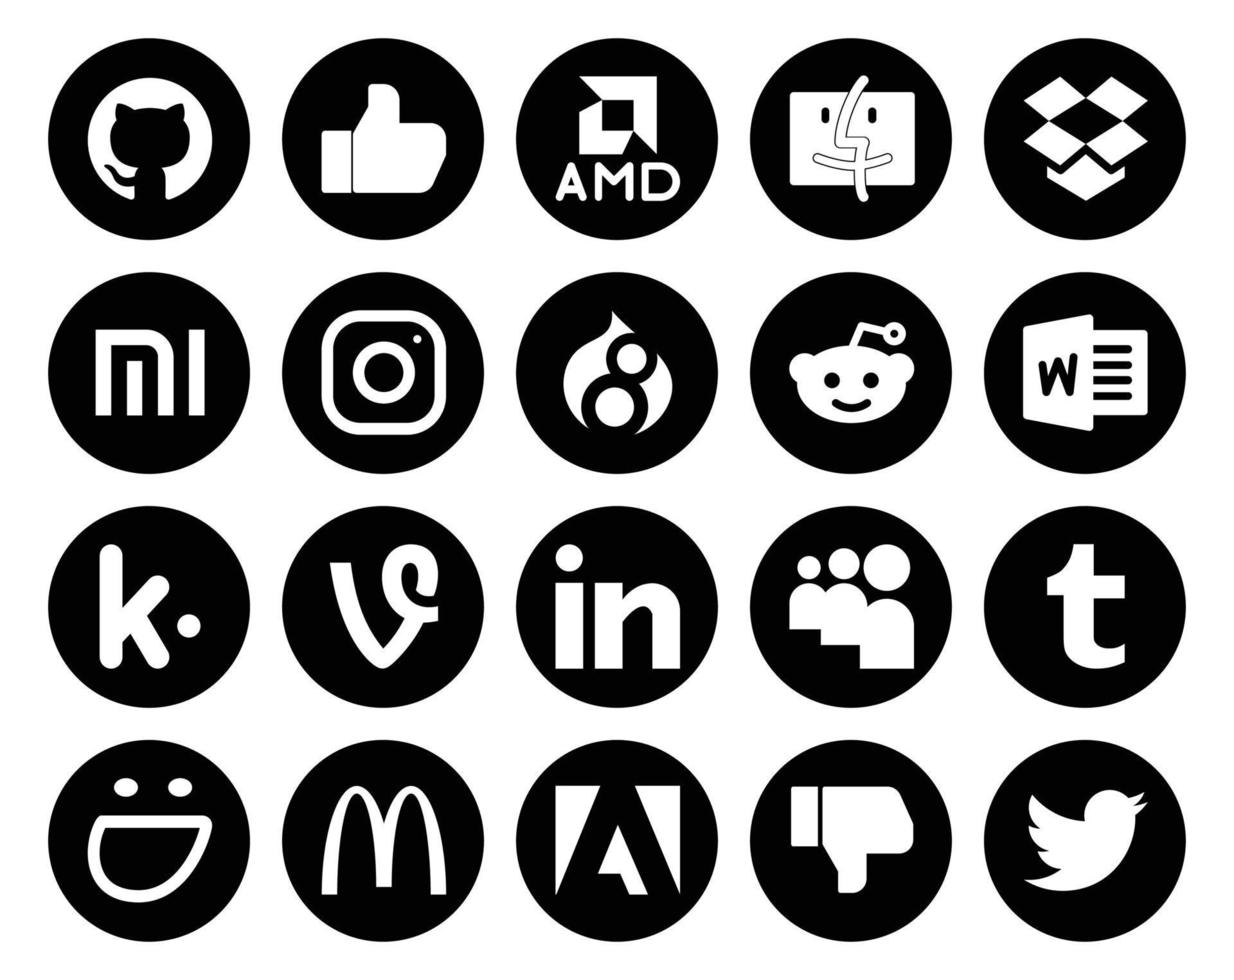 20 Symbolpakete für soziale Medien, einschließlich Adobe Smugmug, Reddit, Tumblr, Linkedin vektor